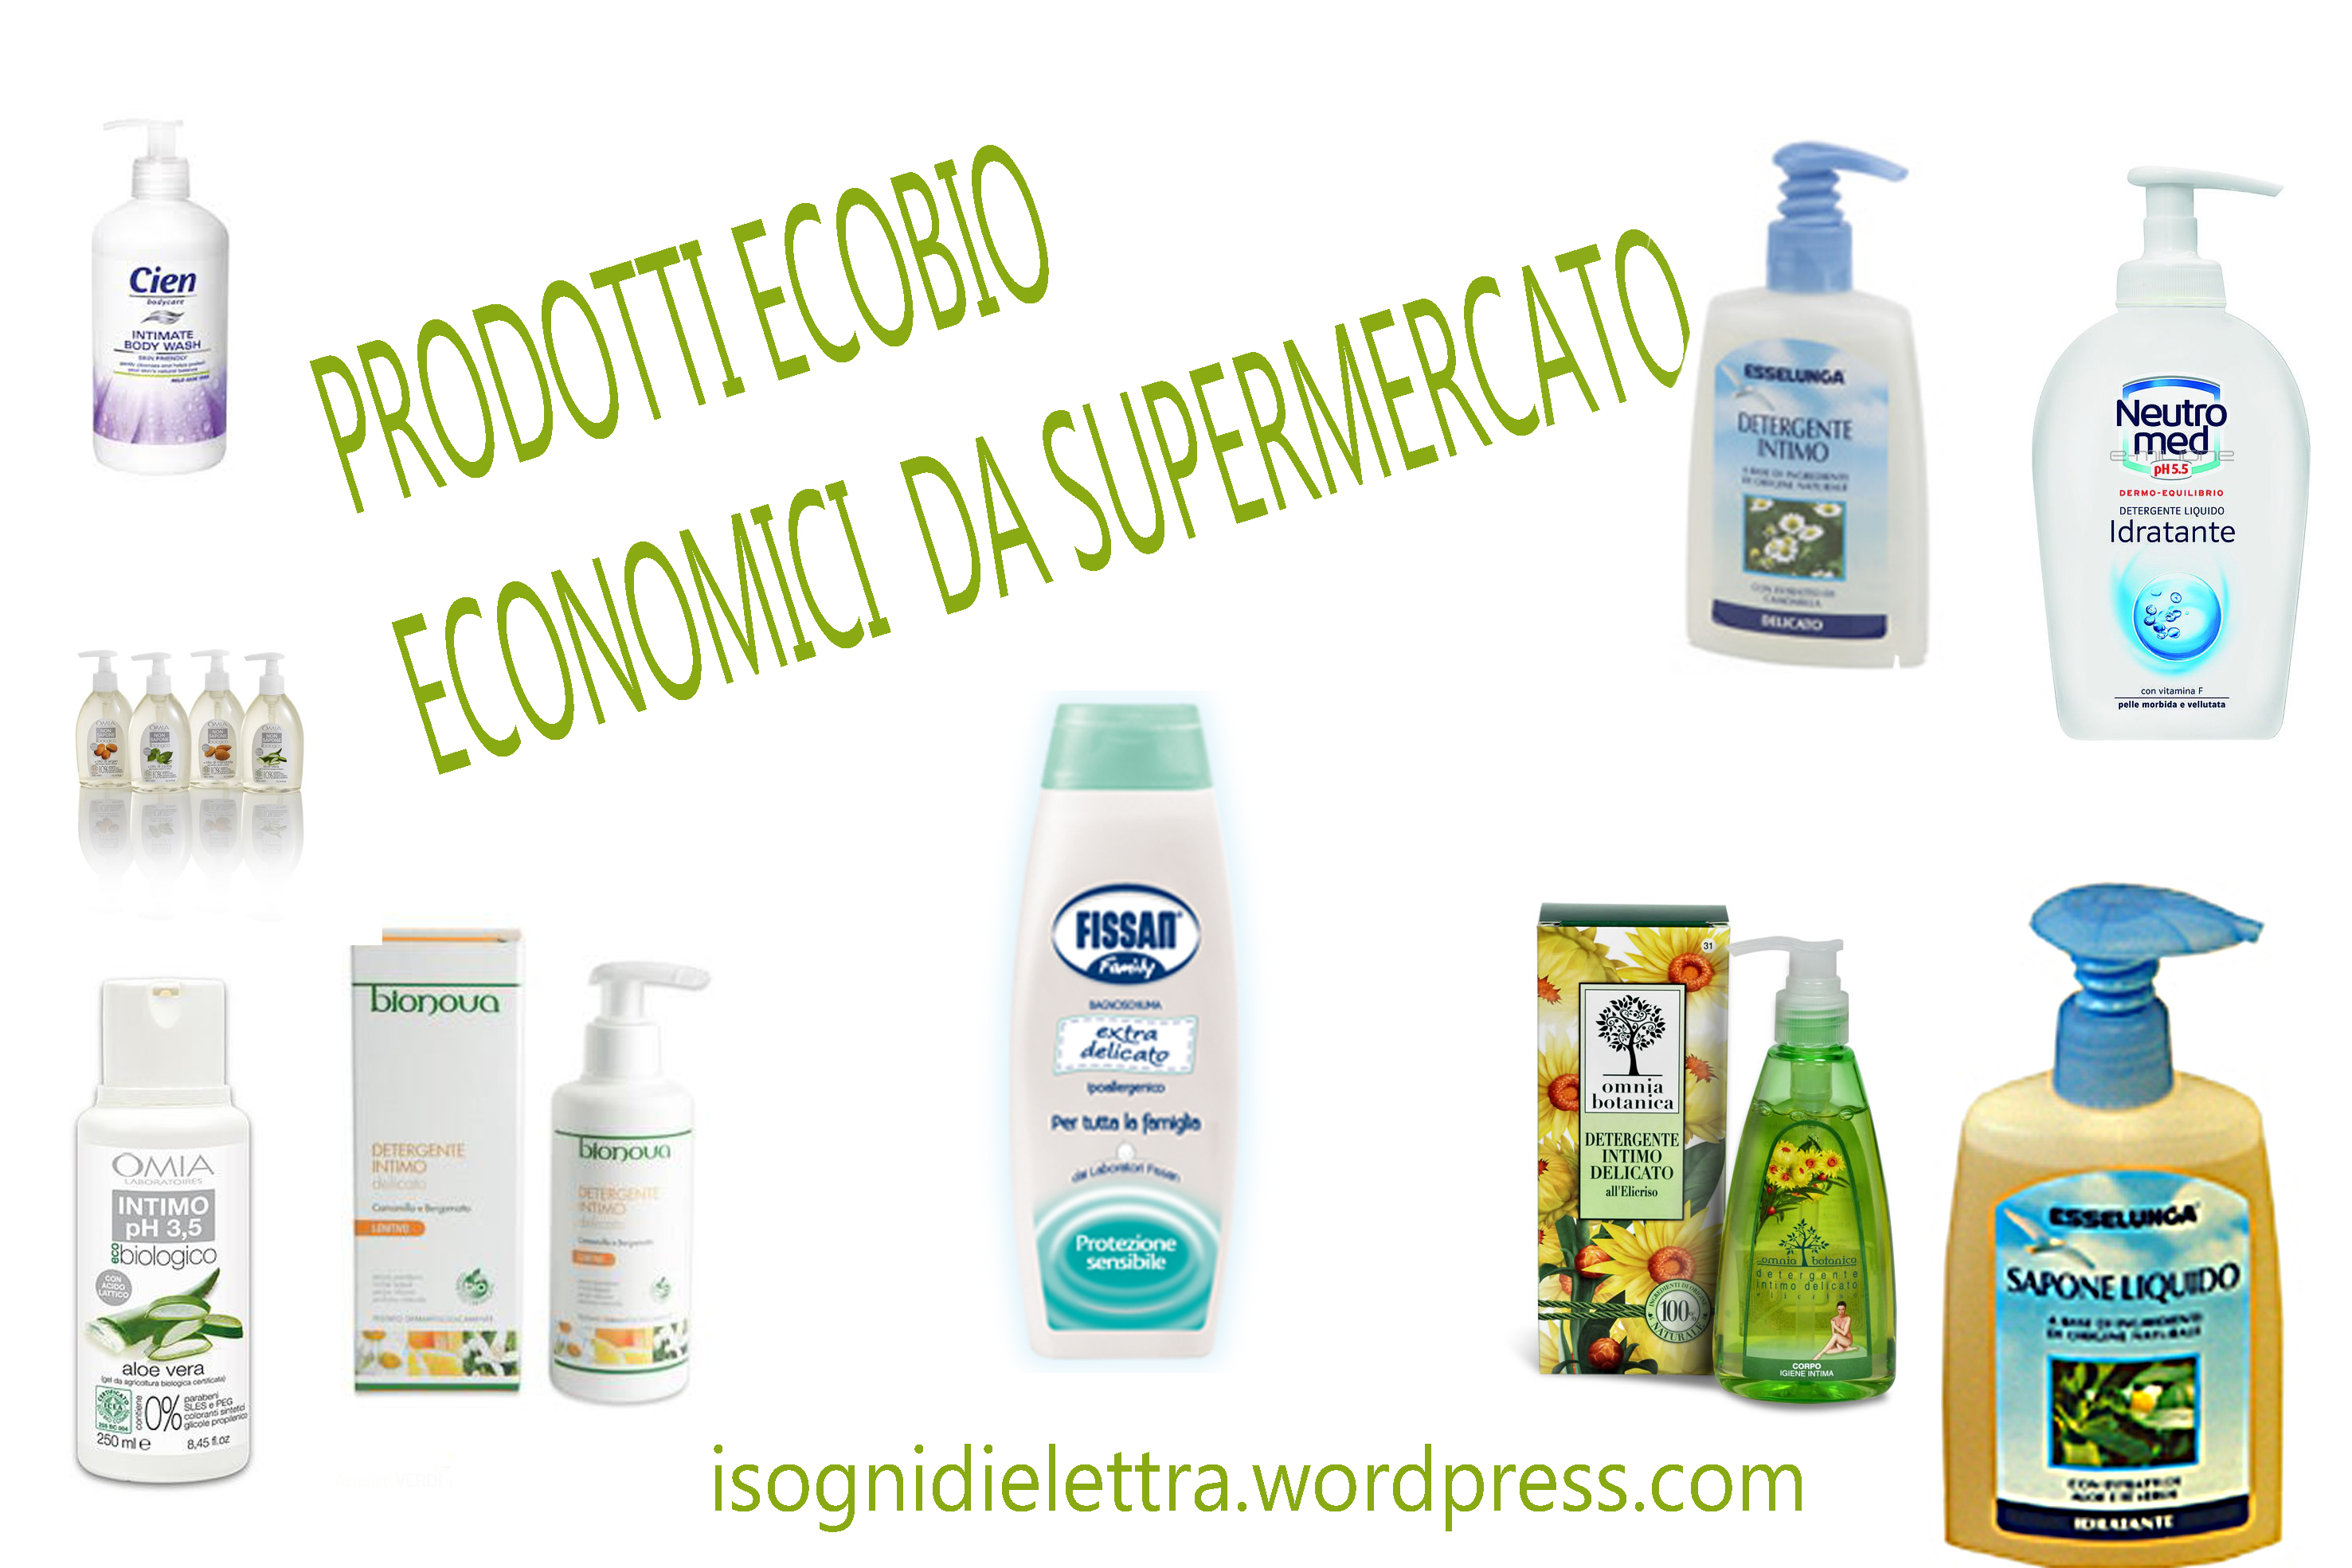 Prodotti Da Supermercato Eco Bio Ottimo Inci Il Meglio Per La Nostra Quotidiana Igiene E La Bellezza Isognidielettra